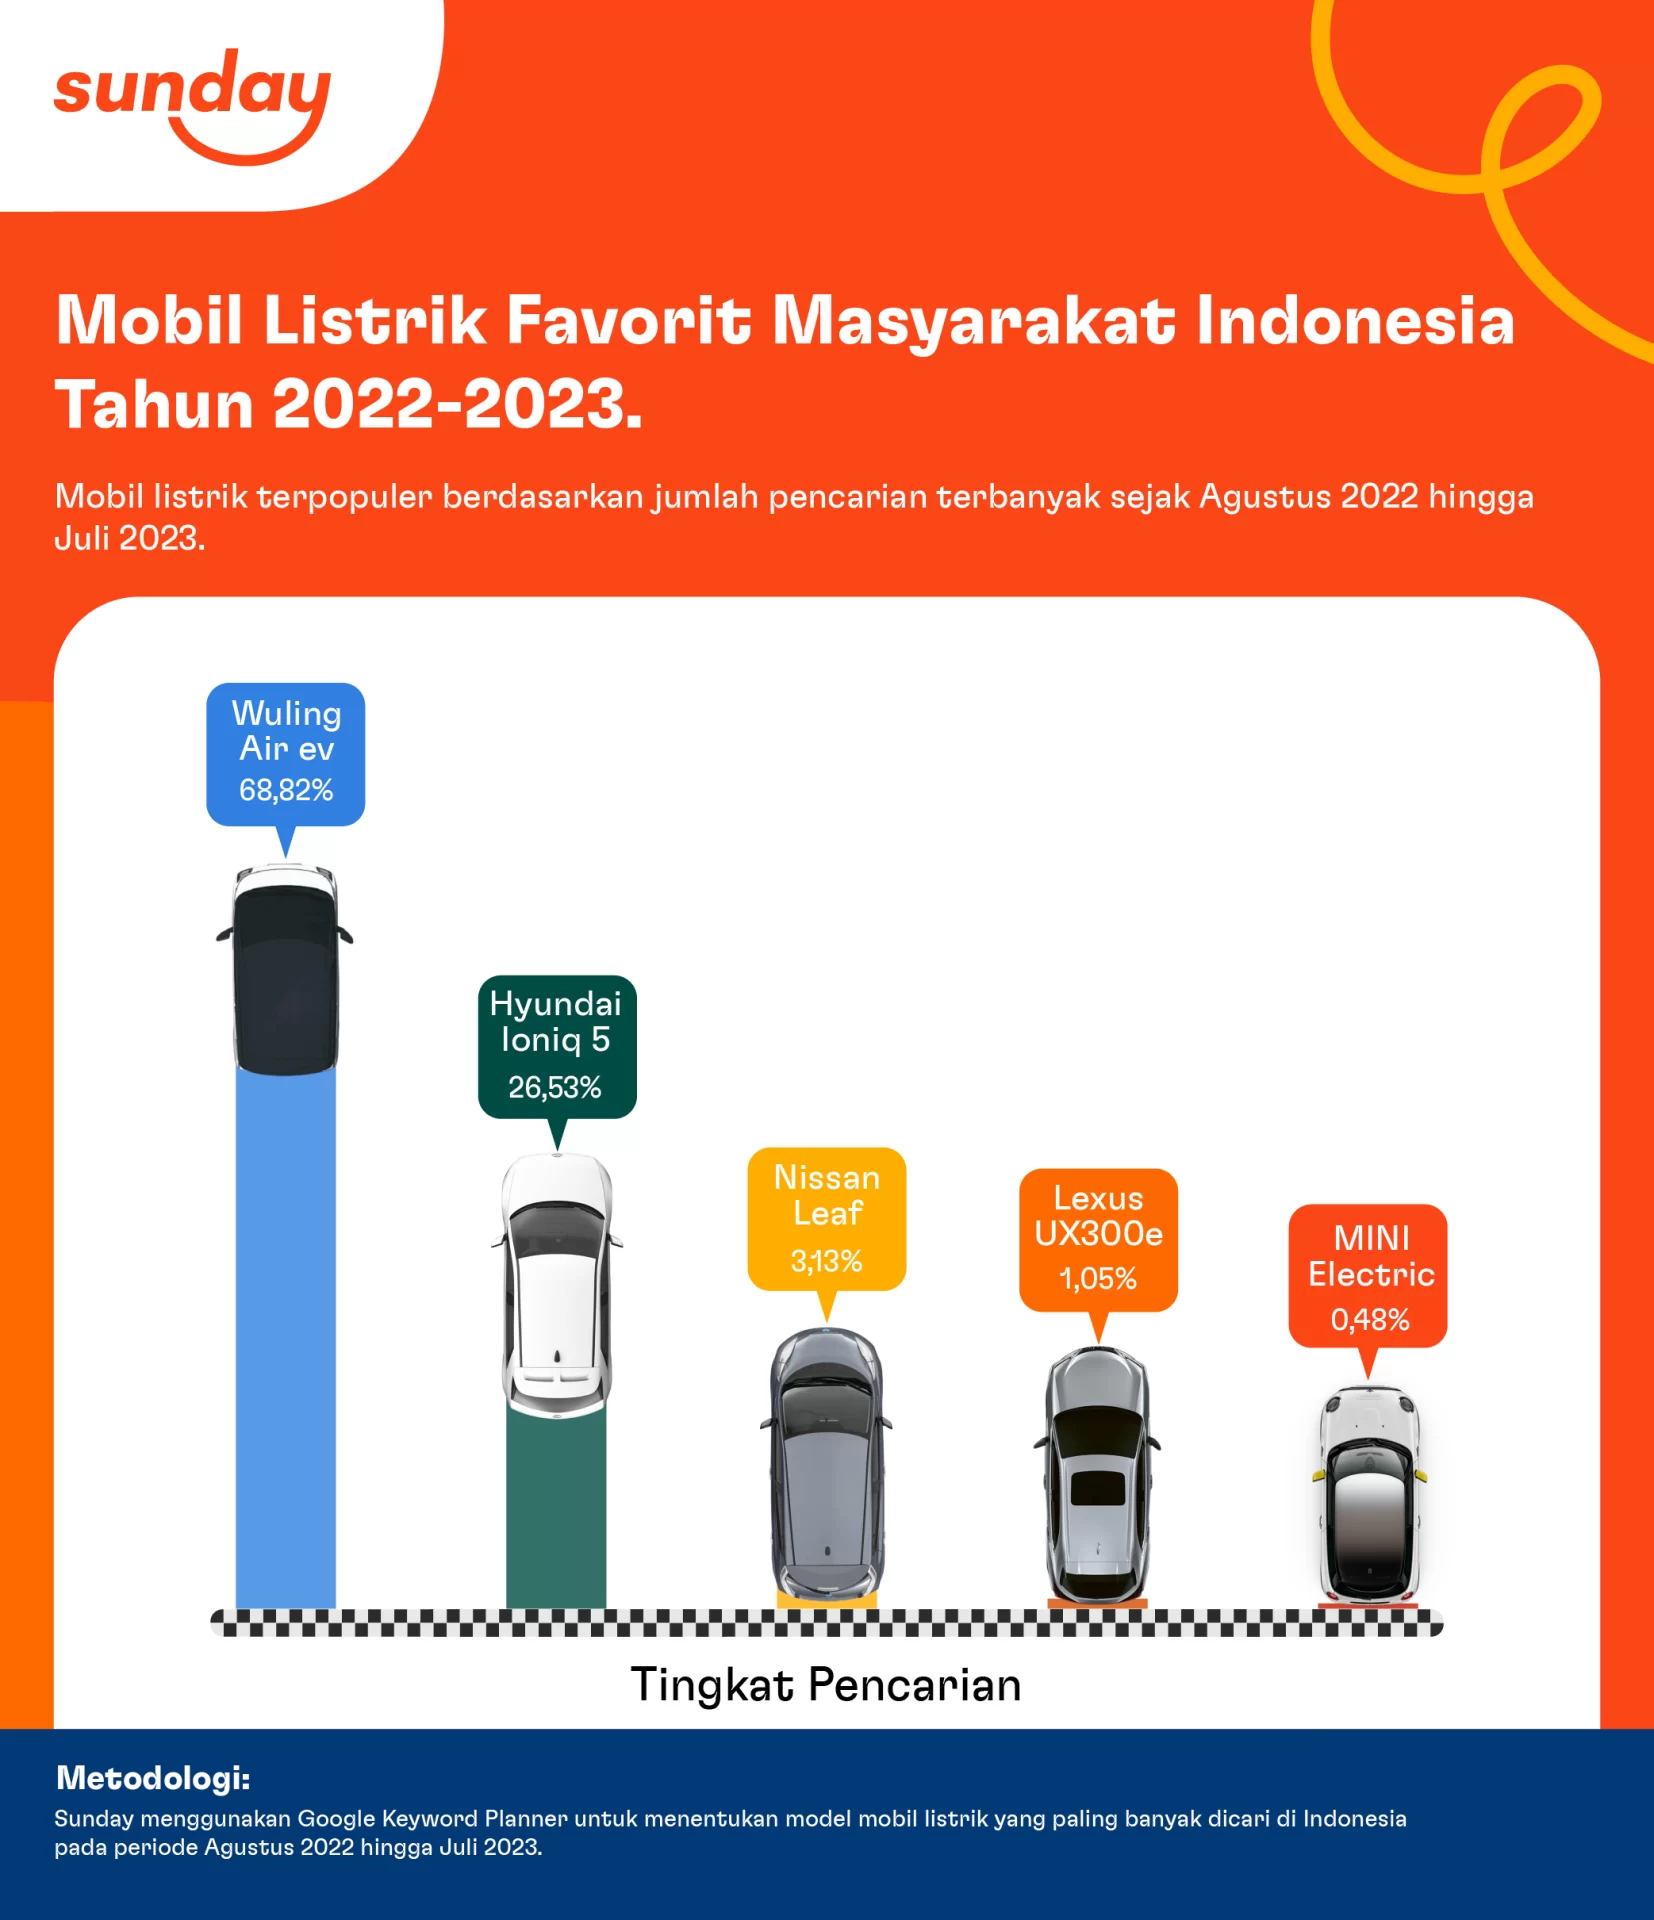 Wuling Air EV berhasil menjadi mobil listrik terpopuler di Indonesia dengan persentase pencarian mencapai 68,82%, diikuti Hyundai Ioniq 5 (26,53%), Nissan Leaf (3,13%), Lexus UX300e (1,05%), dan Mini Electric (0,48%).